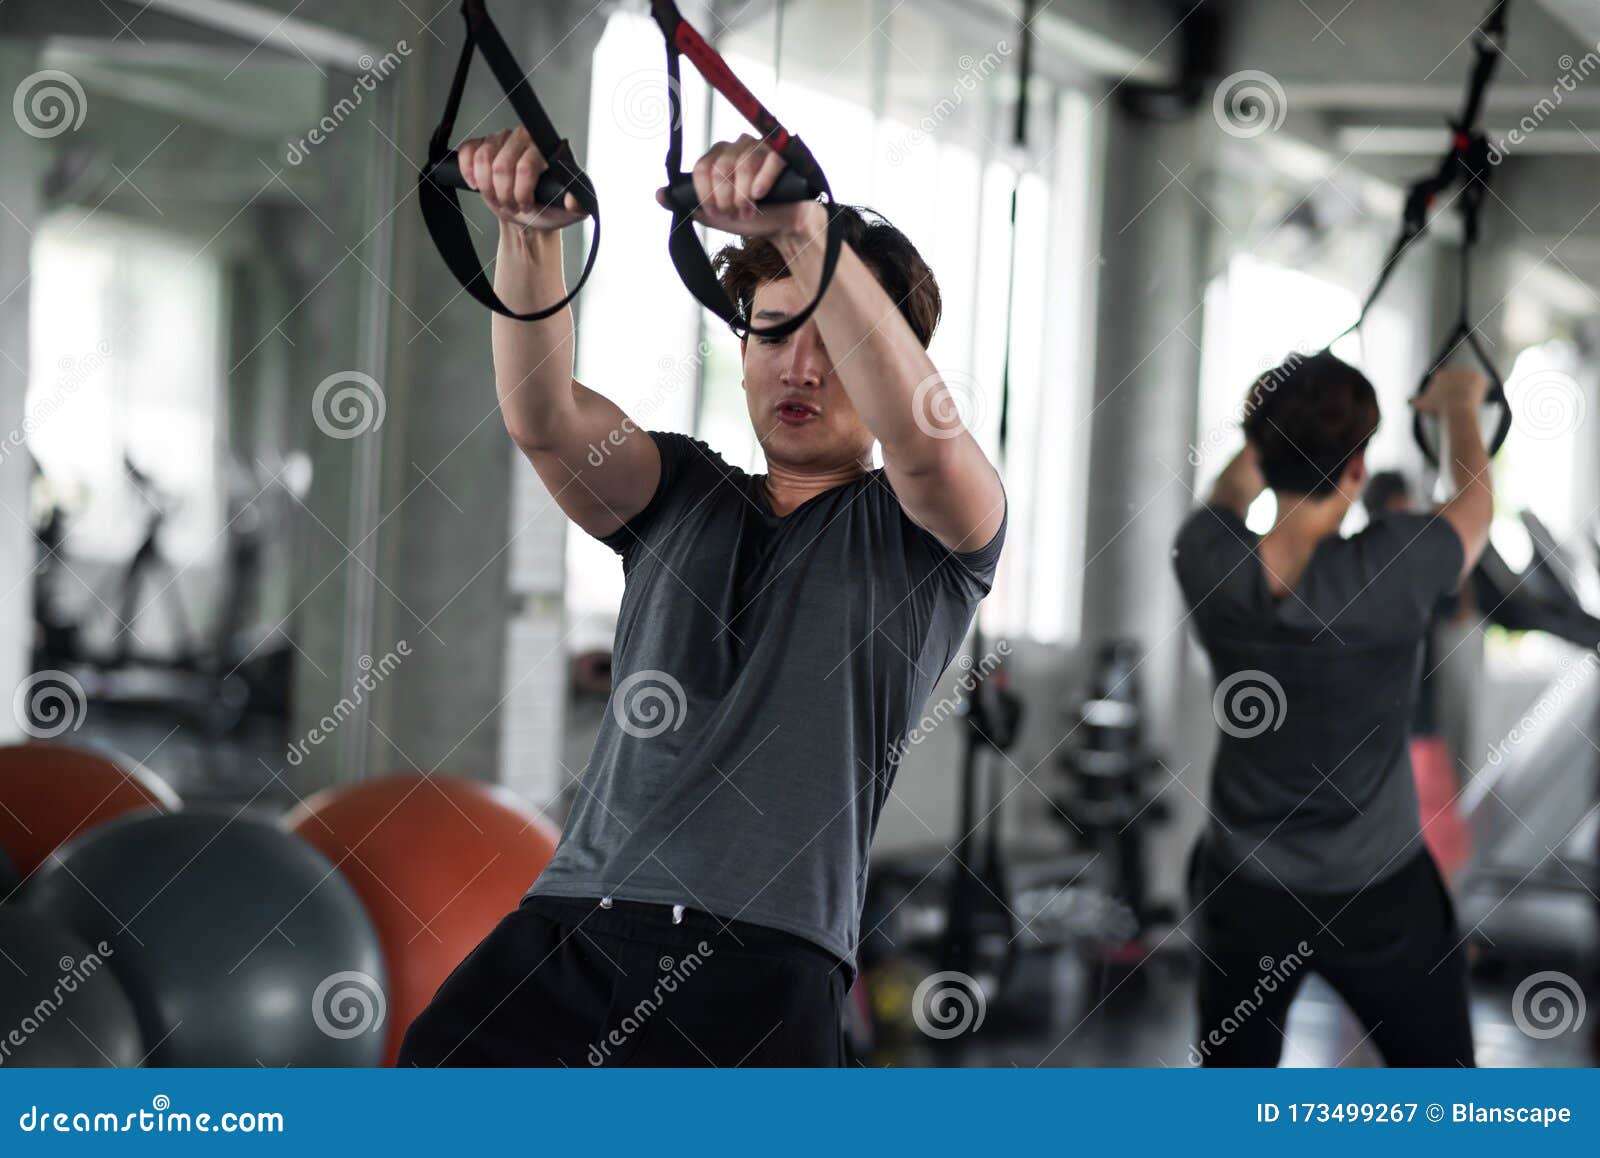 Sangles D'exercice Pour Les Muscles Abdominaux Dans La Salle De Sport Image  stock - Image du humain, adulte: 173499267